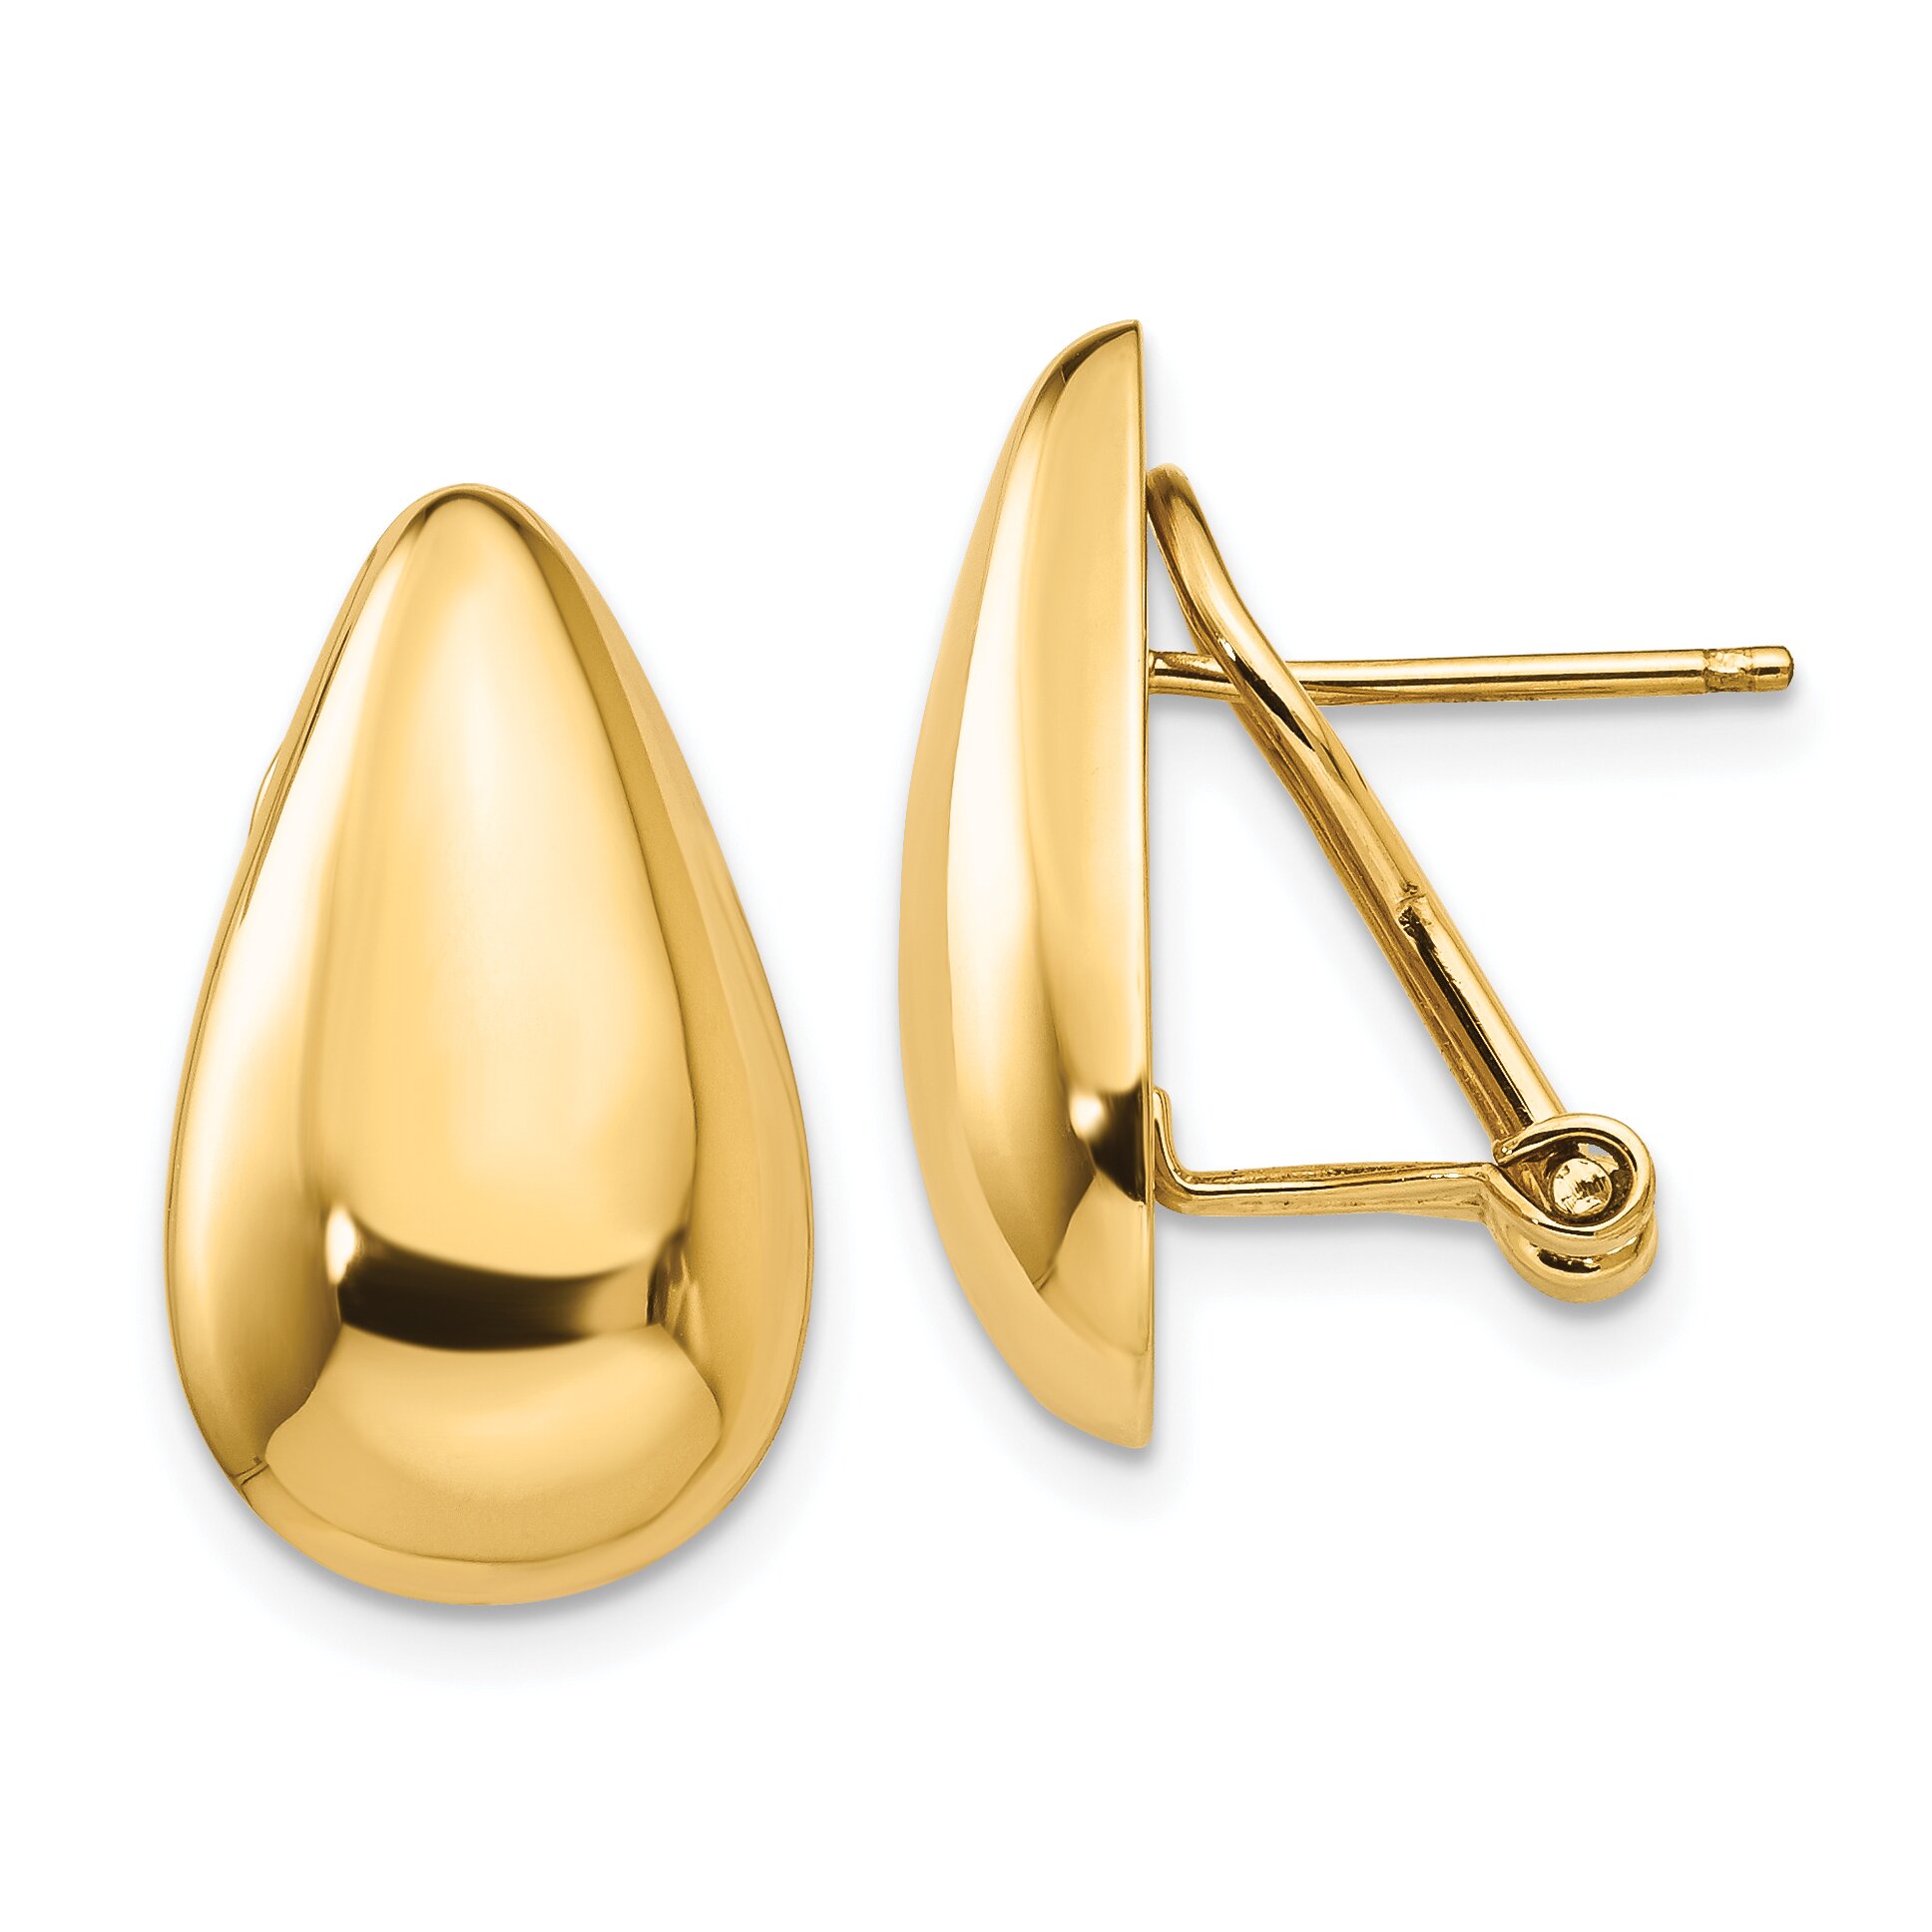 Findingking 14K Gold Teardrop Omega Back Stud Earrings Jewelry